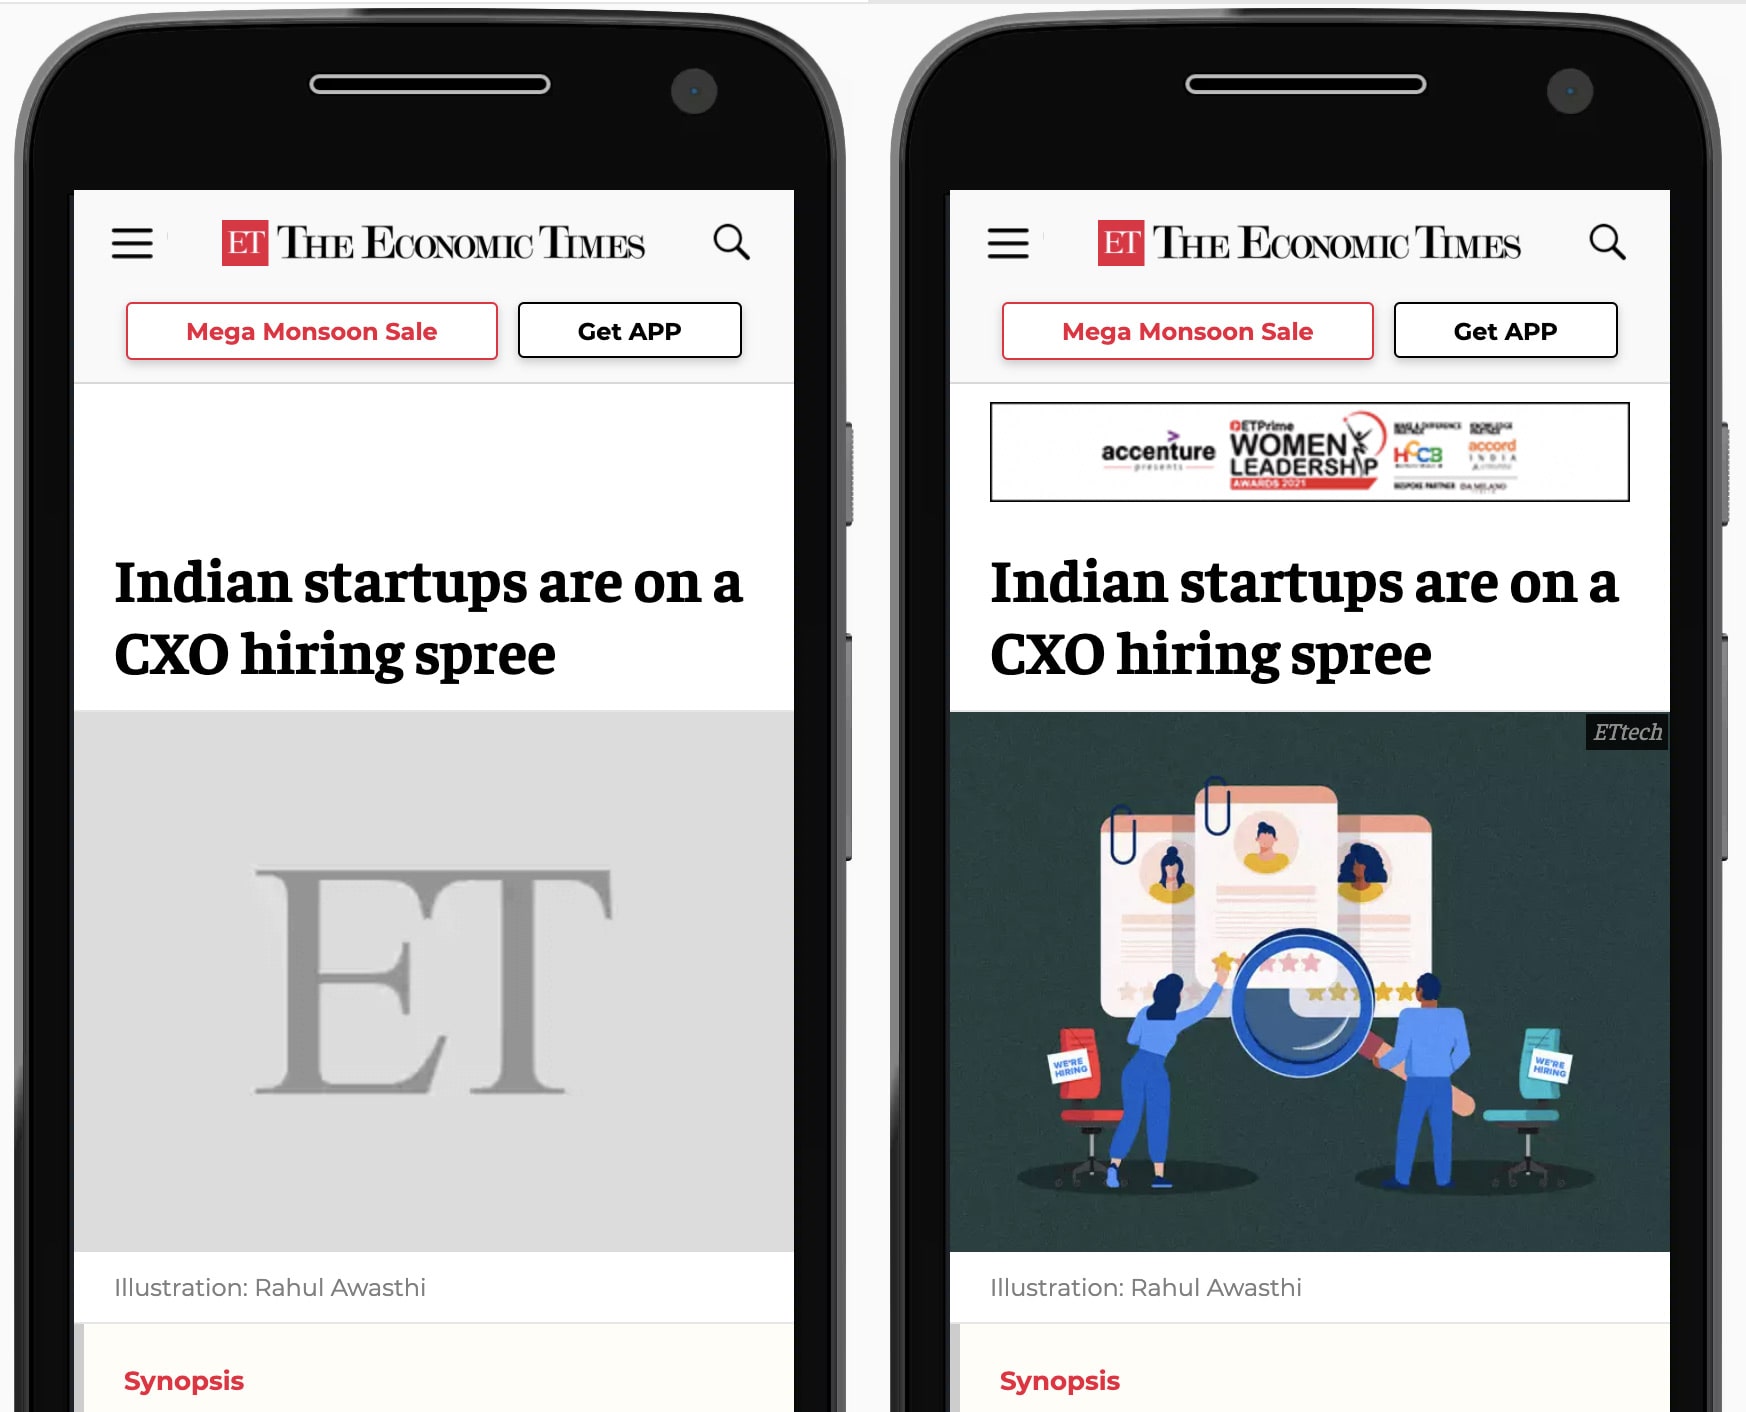 مقایسه ای کنار هم از وب سایت The Economic Times همانطور که در تلفن همراه نشان داده شده است. در سمت چپ، یک متغیر خاکستری برای تصویر قهرمان مقاله رزرو شده است. در سمت راست، مکان نگهدار با تصویر بارگذاری شده جایگزین می شود.